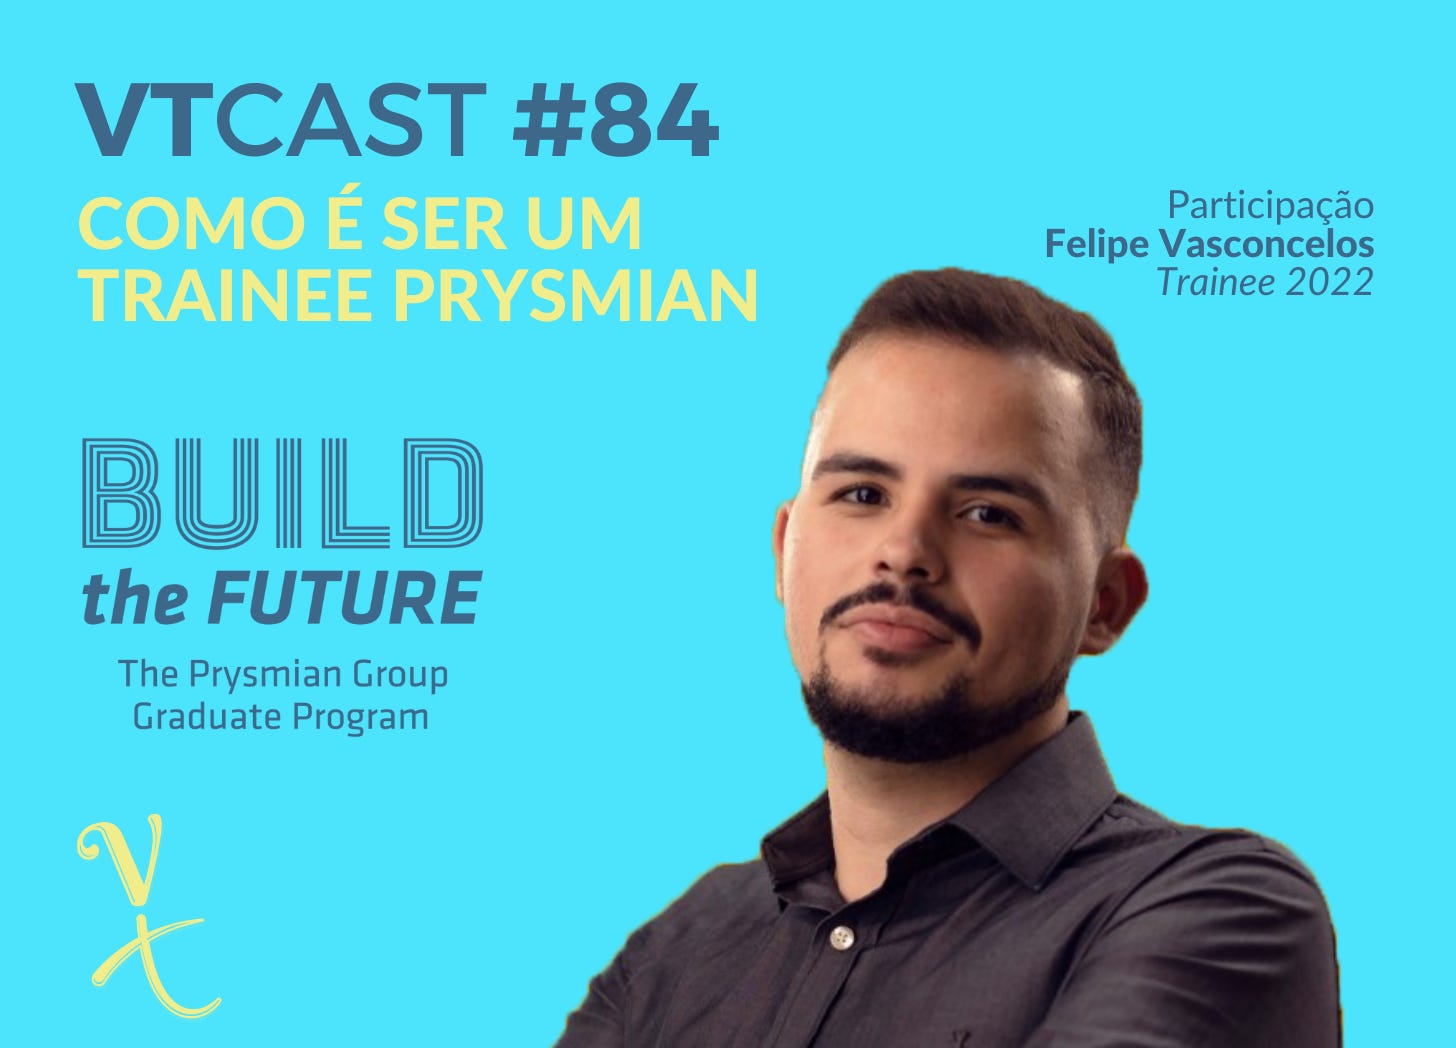 VTcast 84 - Como é ser um Trainee Prysmian. Participação Especial - Felipe Vasconcelos - Trainee 2022. Build the Future. The Prysmian Group Graduate Program. Foto de Felipe sorrindo.